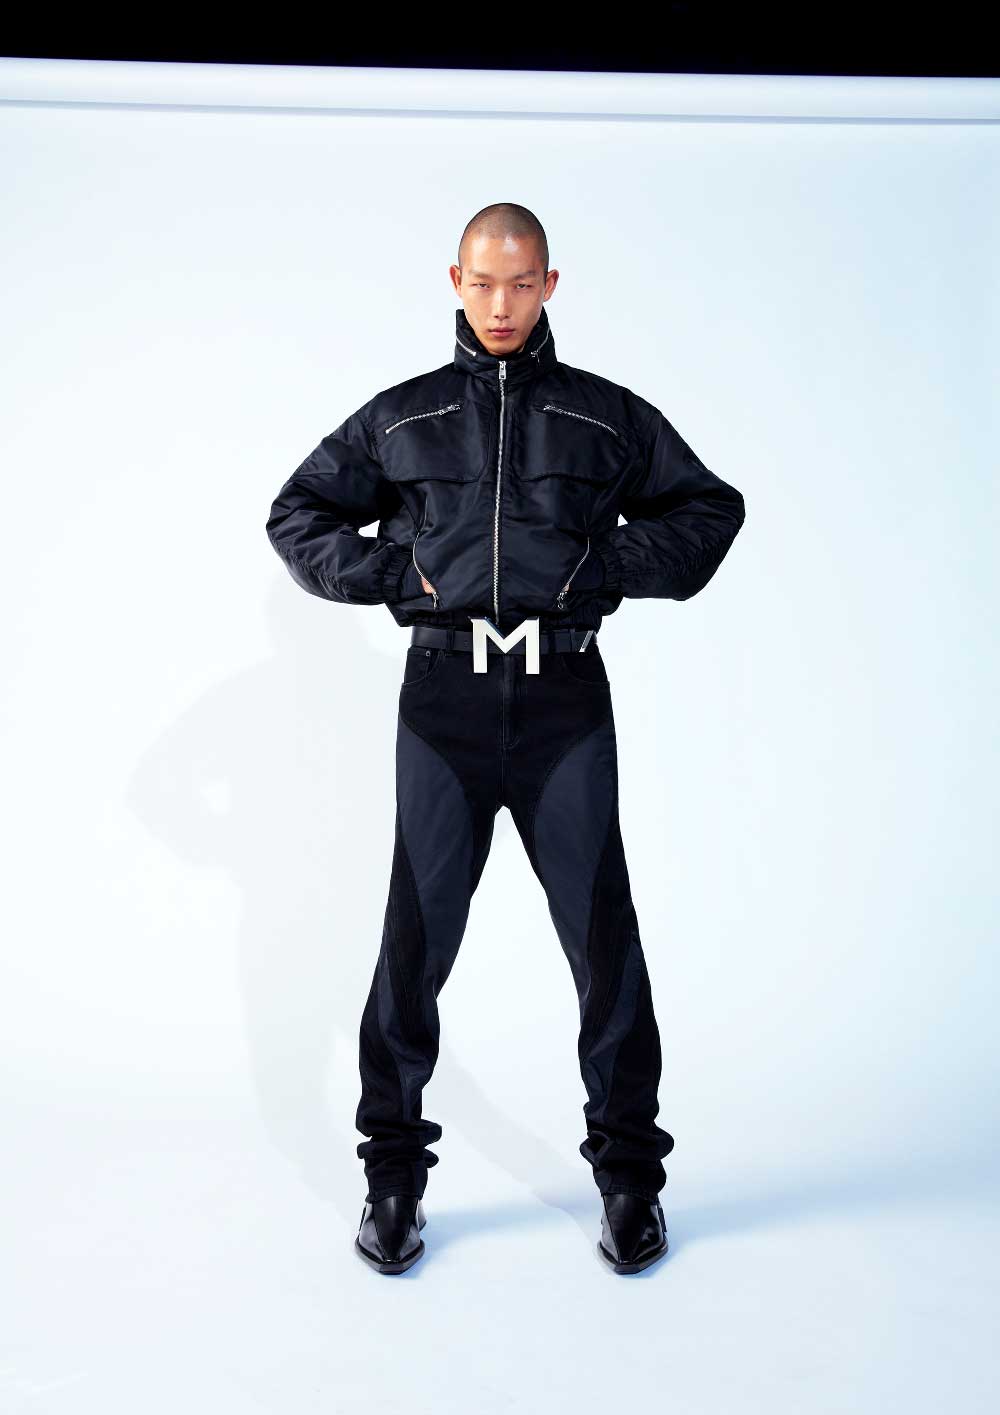 Mugler H&M resucita el espíritu de Thierry